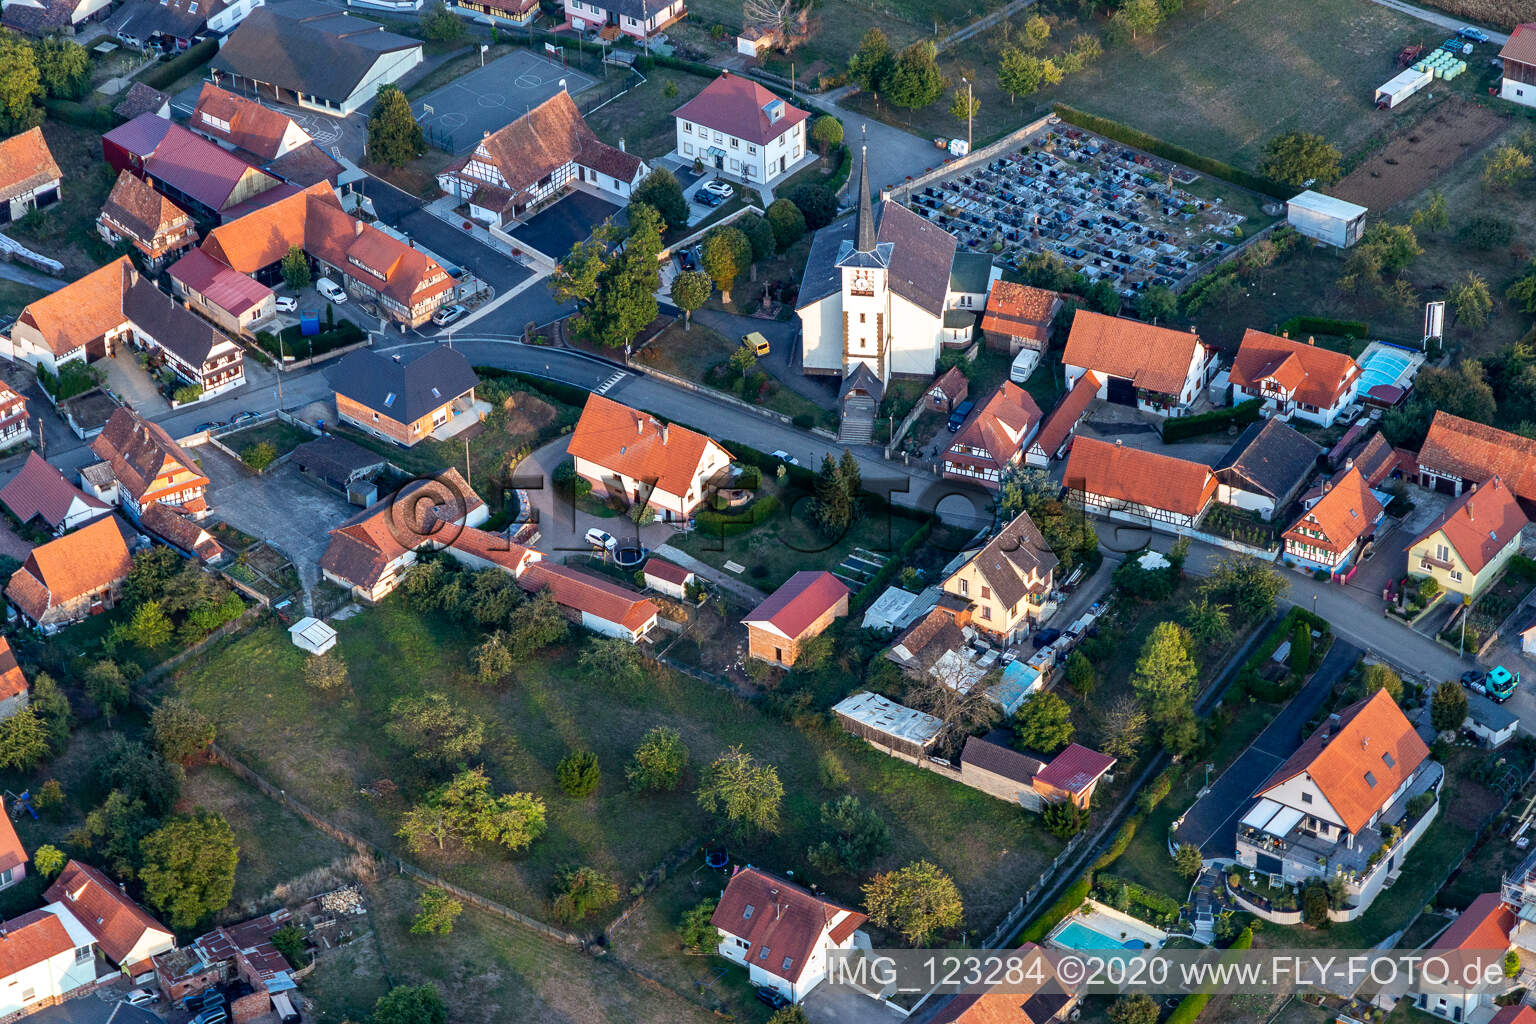 Vue aérienne de Cimetière de l'église catholique de Schœnenbourg à Schœnenbourg dans le département Bas Rhin, France